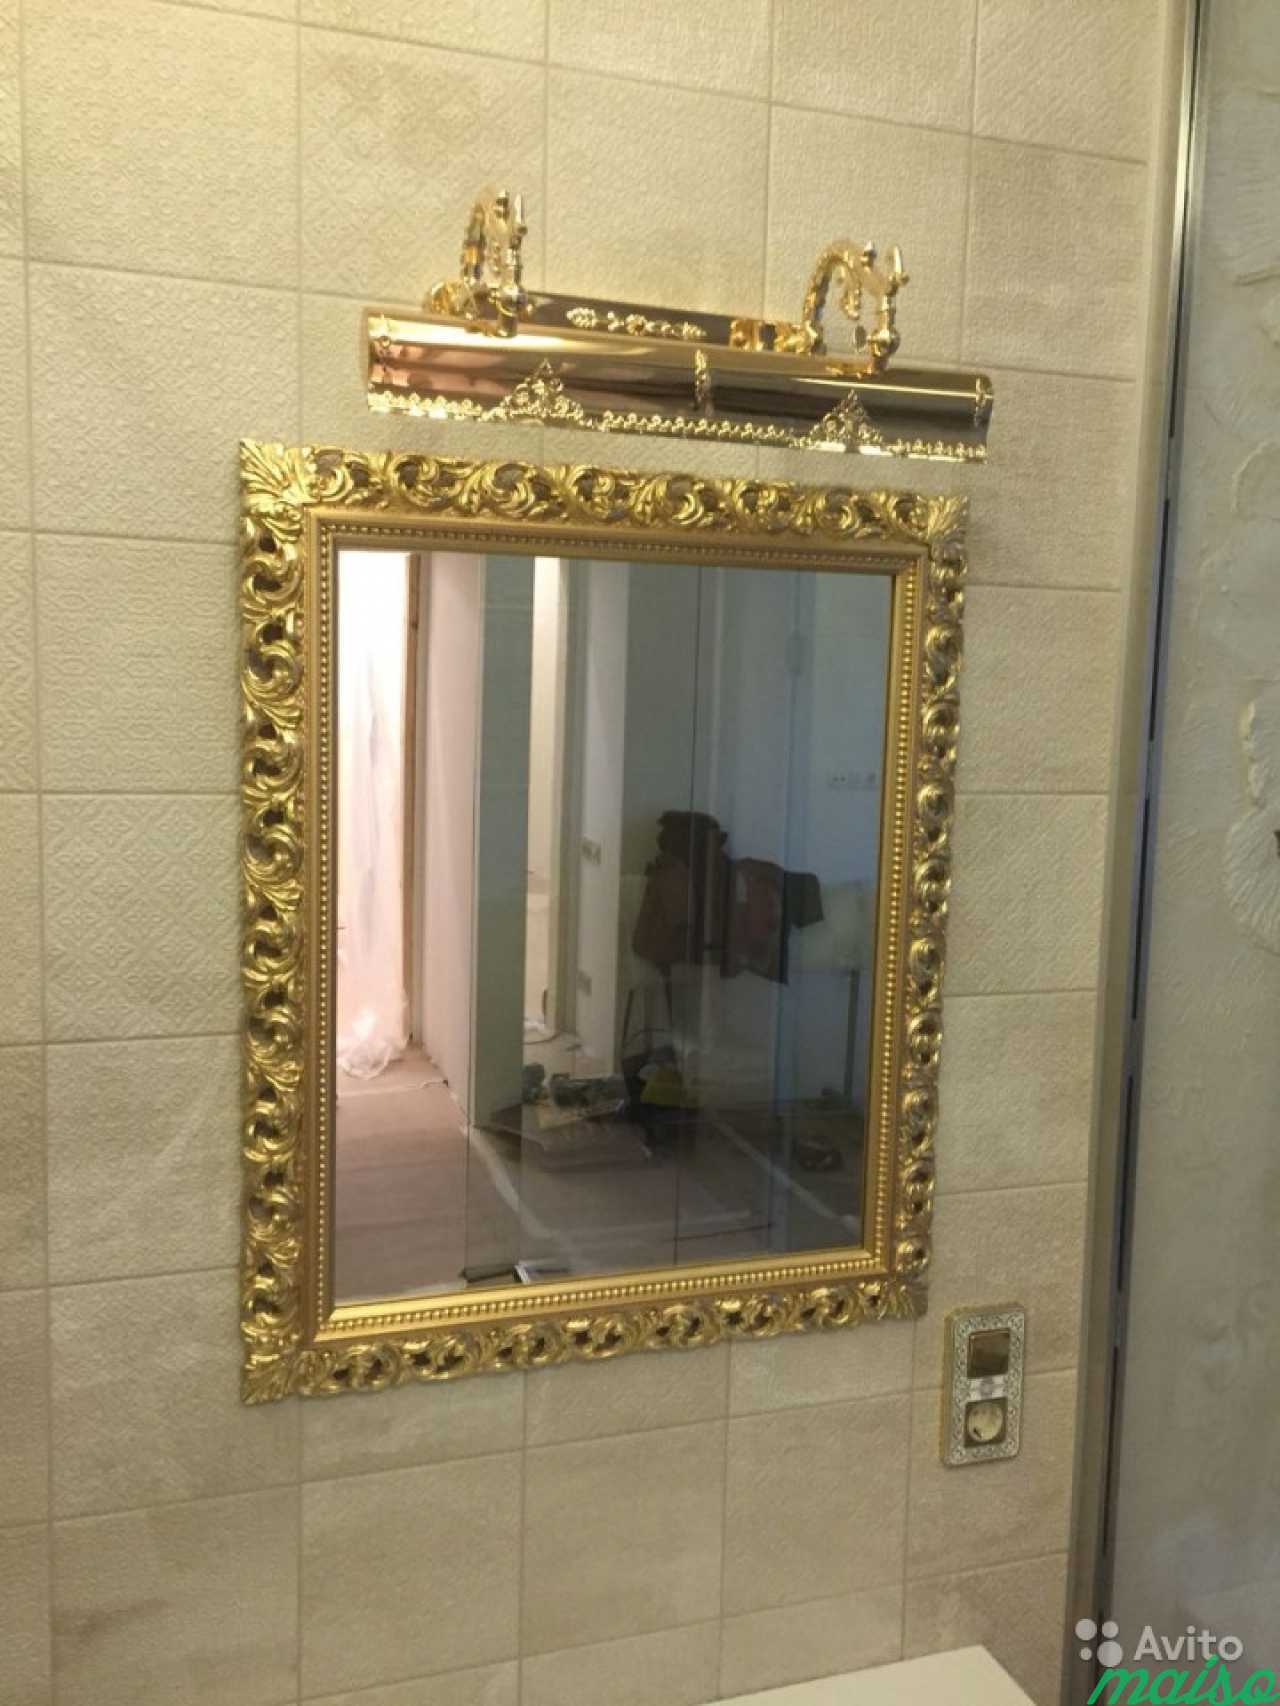 Авито зеркало в ванную